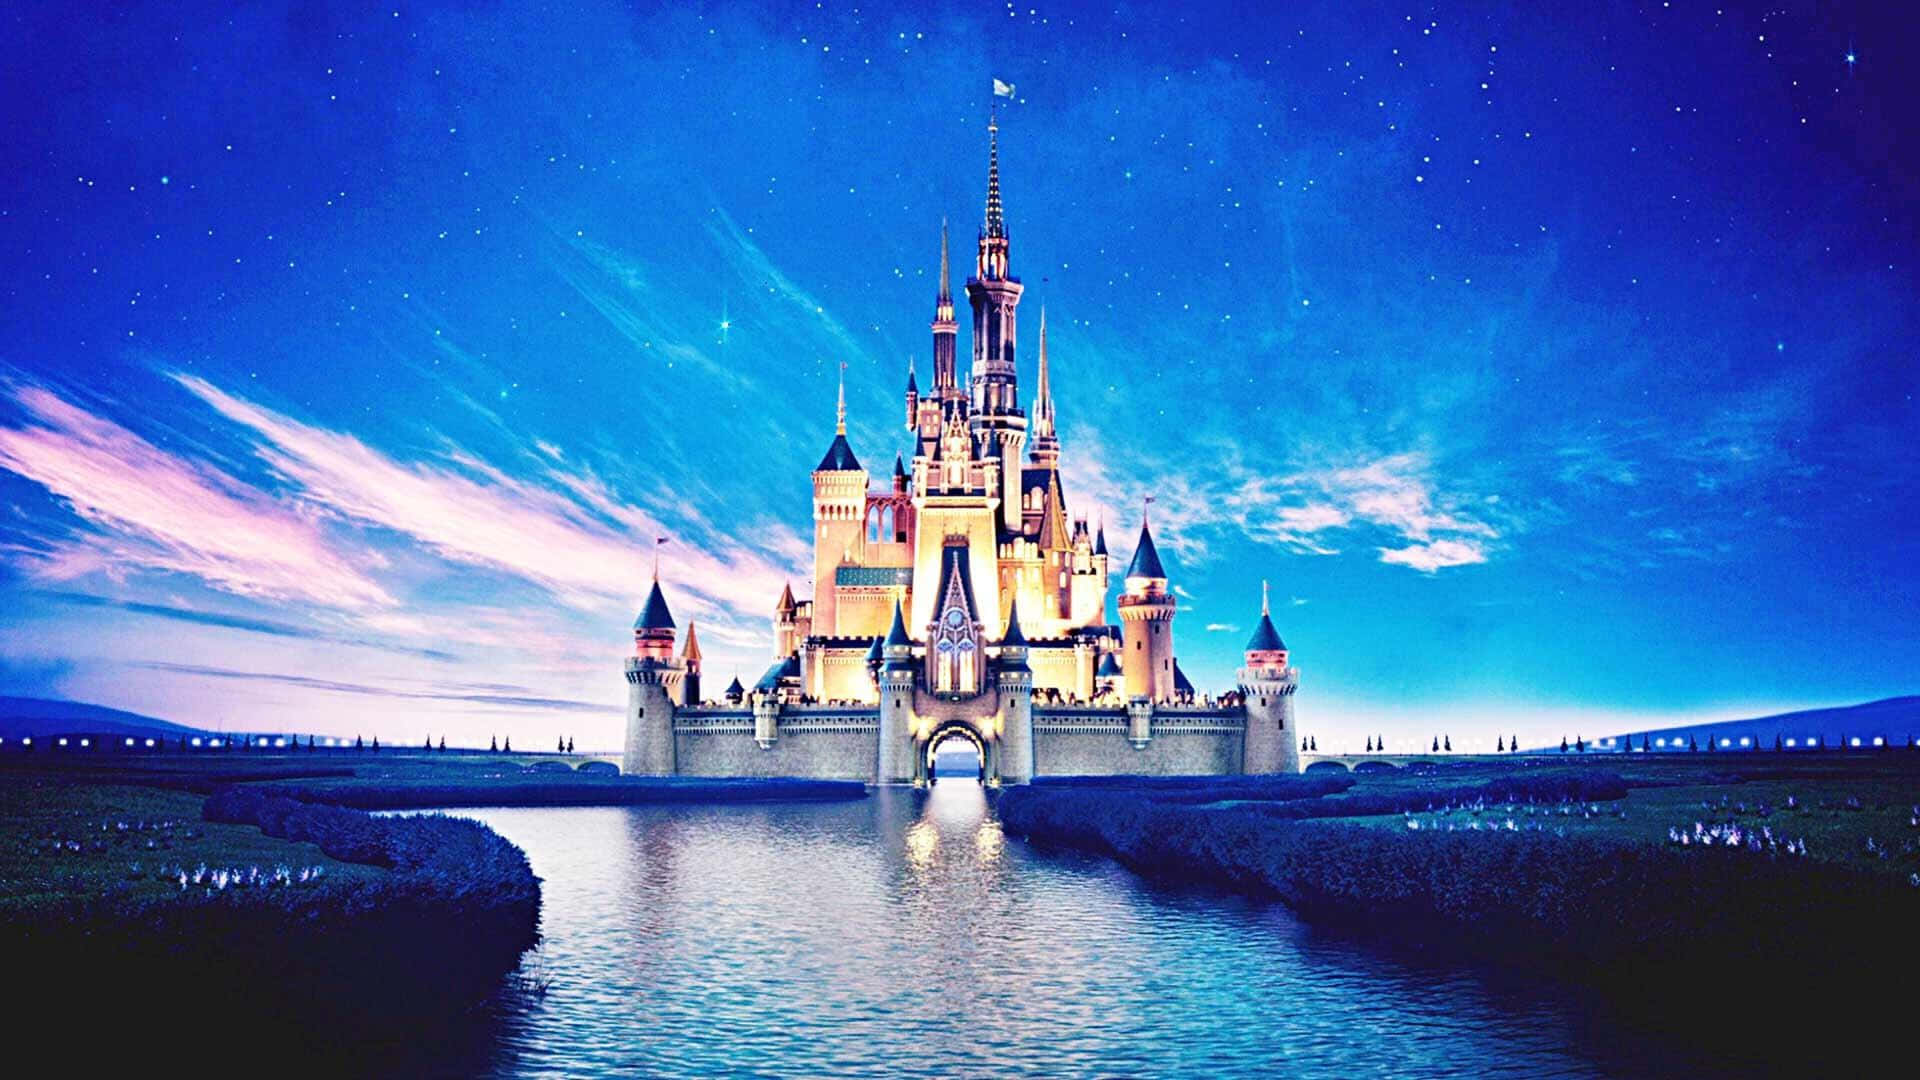 Disneyplus Hintergrund In 1920 X 1080 Auflösung.